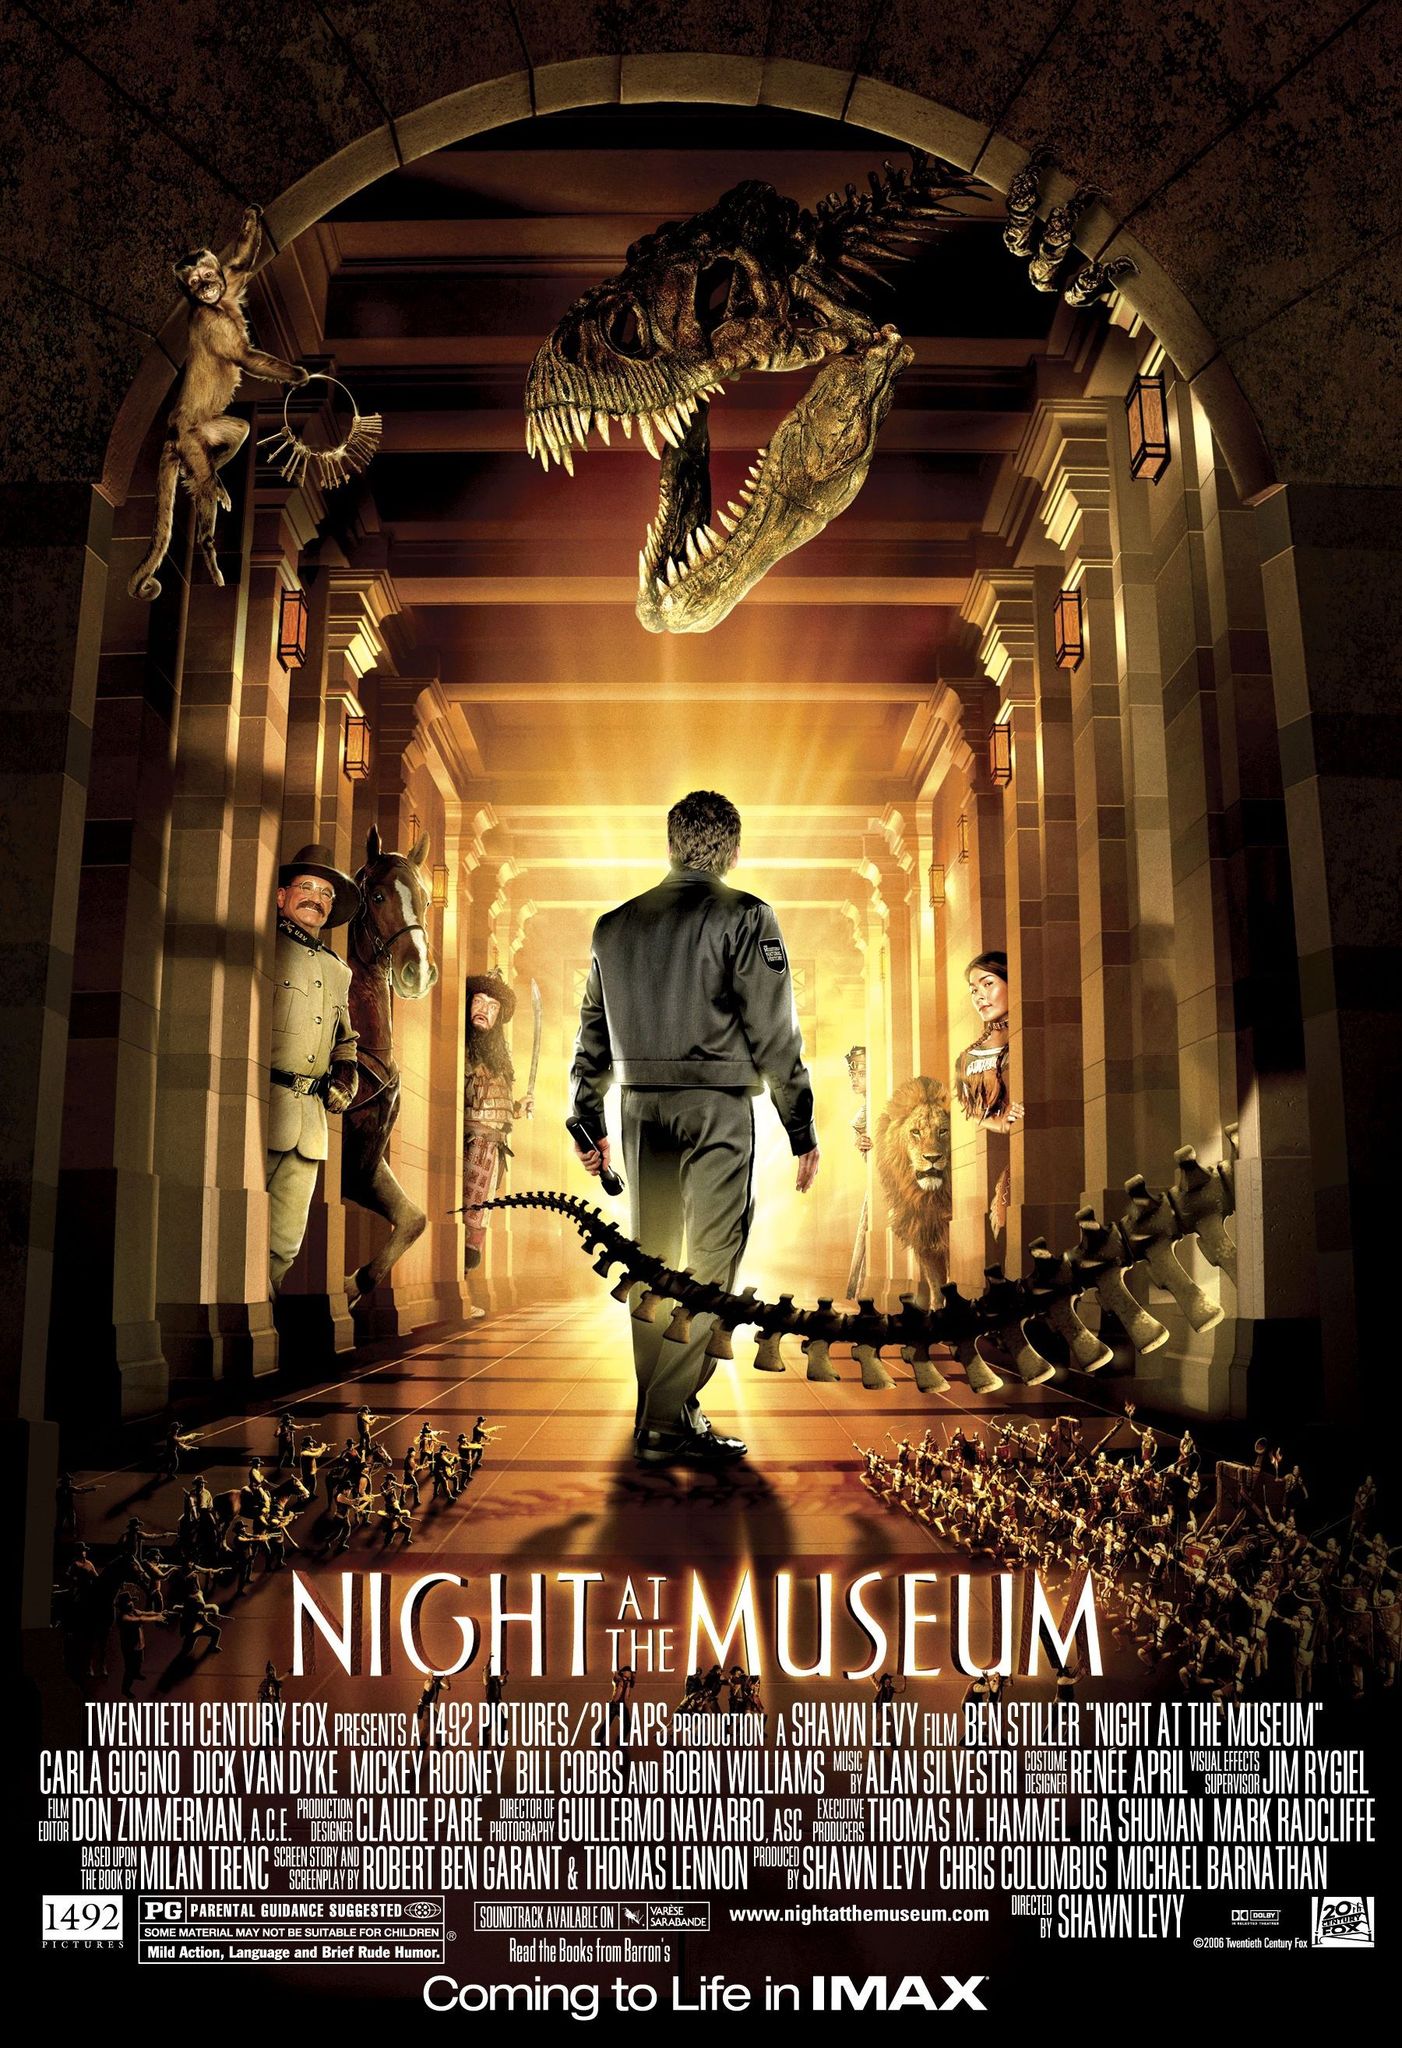 Noc v muzeu / Night at the Museum (2006) CZ/EN (4K) = CSFD 63%